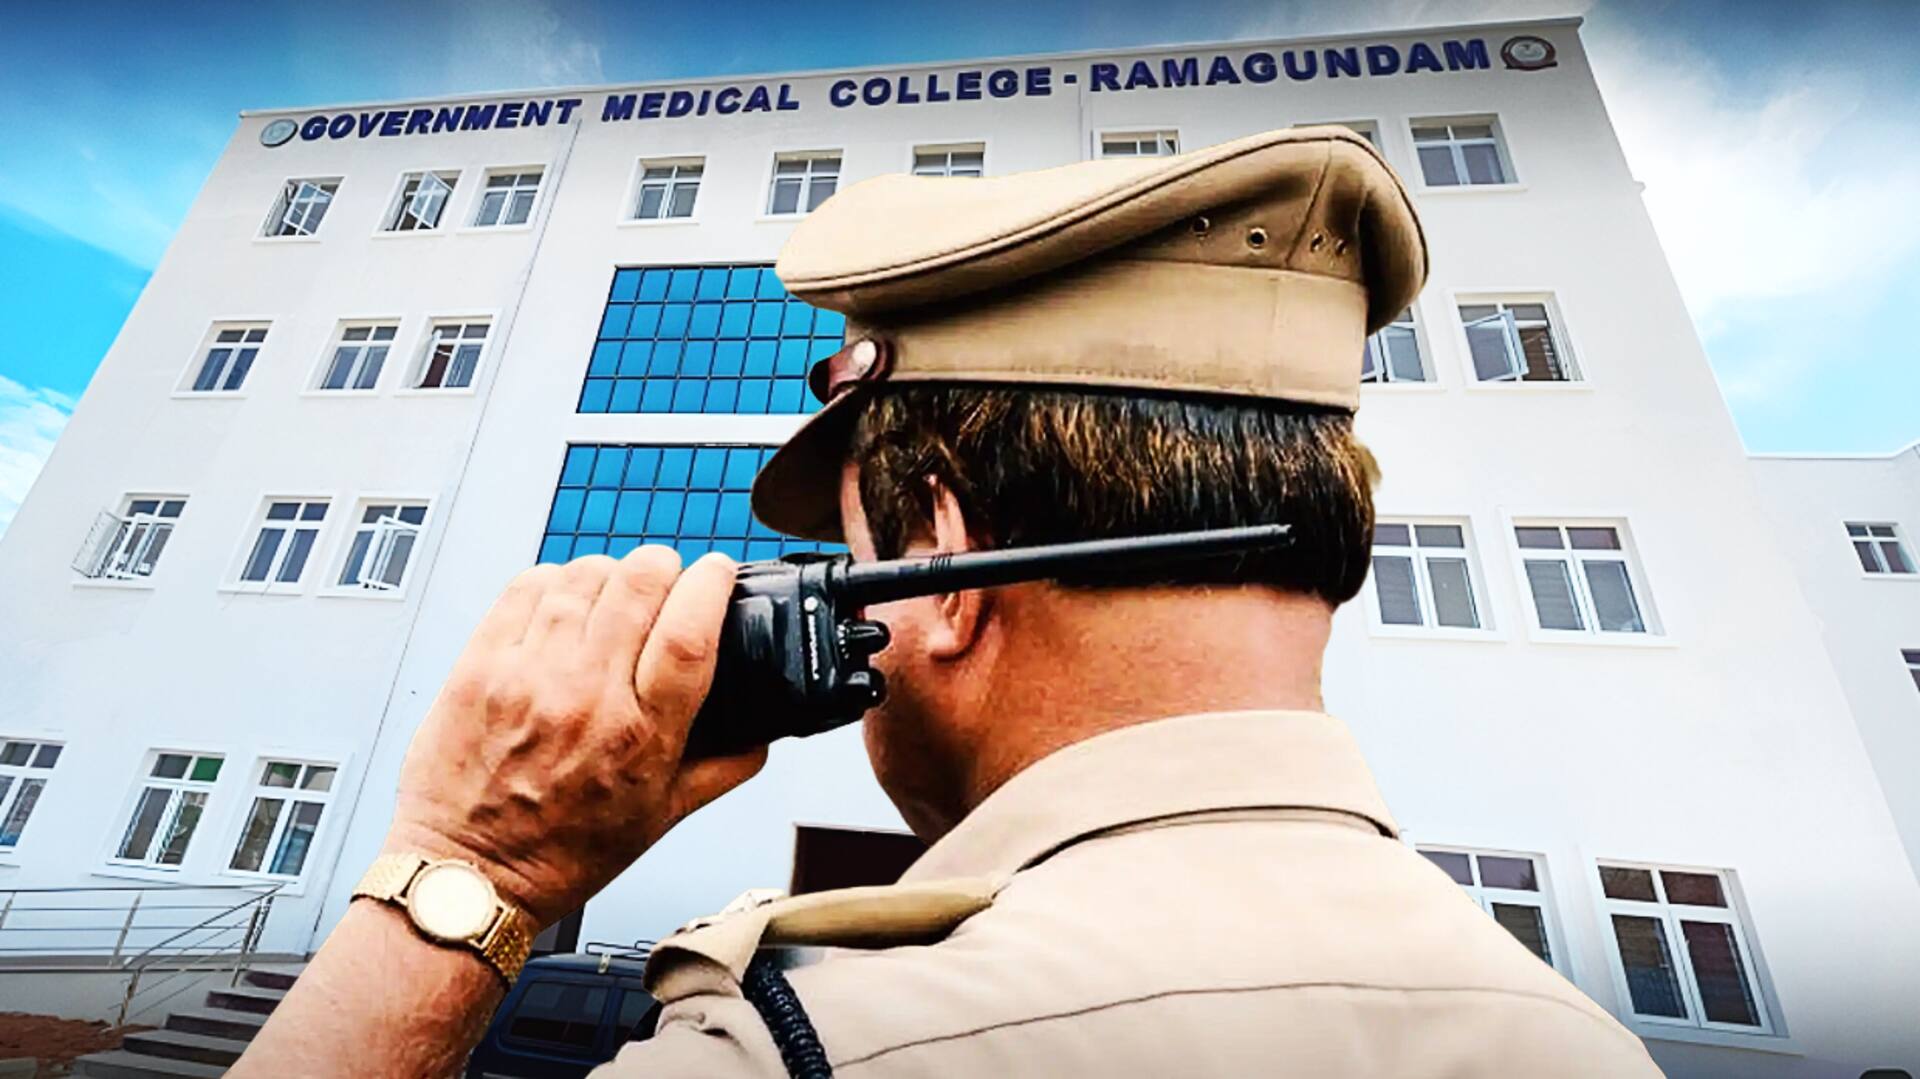 तेलंगाना: रामागुंडम मेडिकल कॉलेज में जूनियर छात्र से रैगिंग, सिर और मूंछ मुंडाया